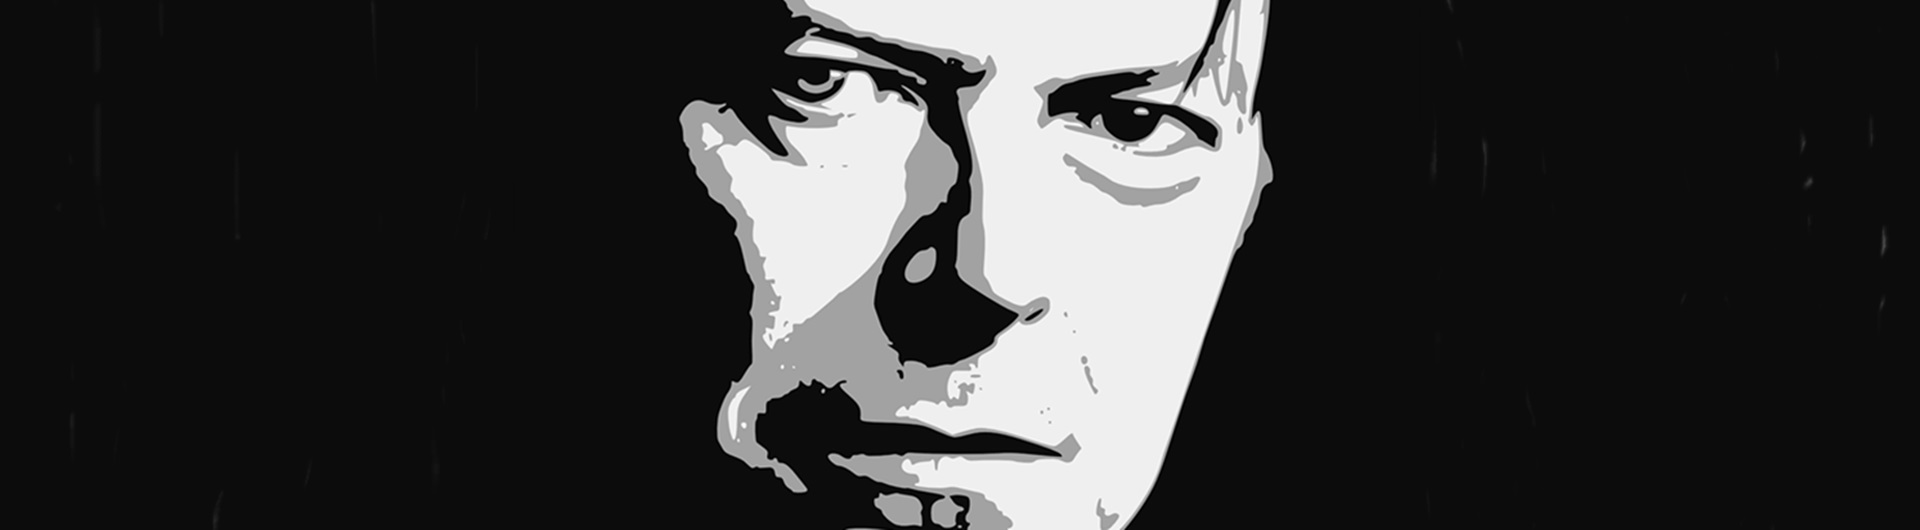 David Bowie: człowiek orkiestra